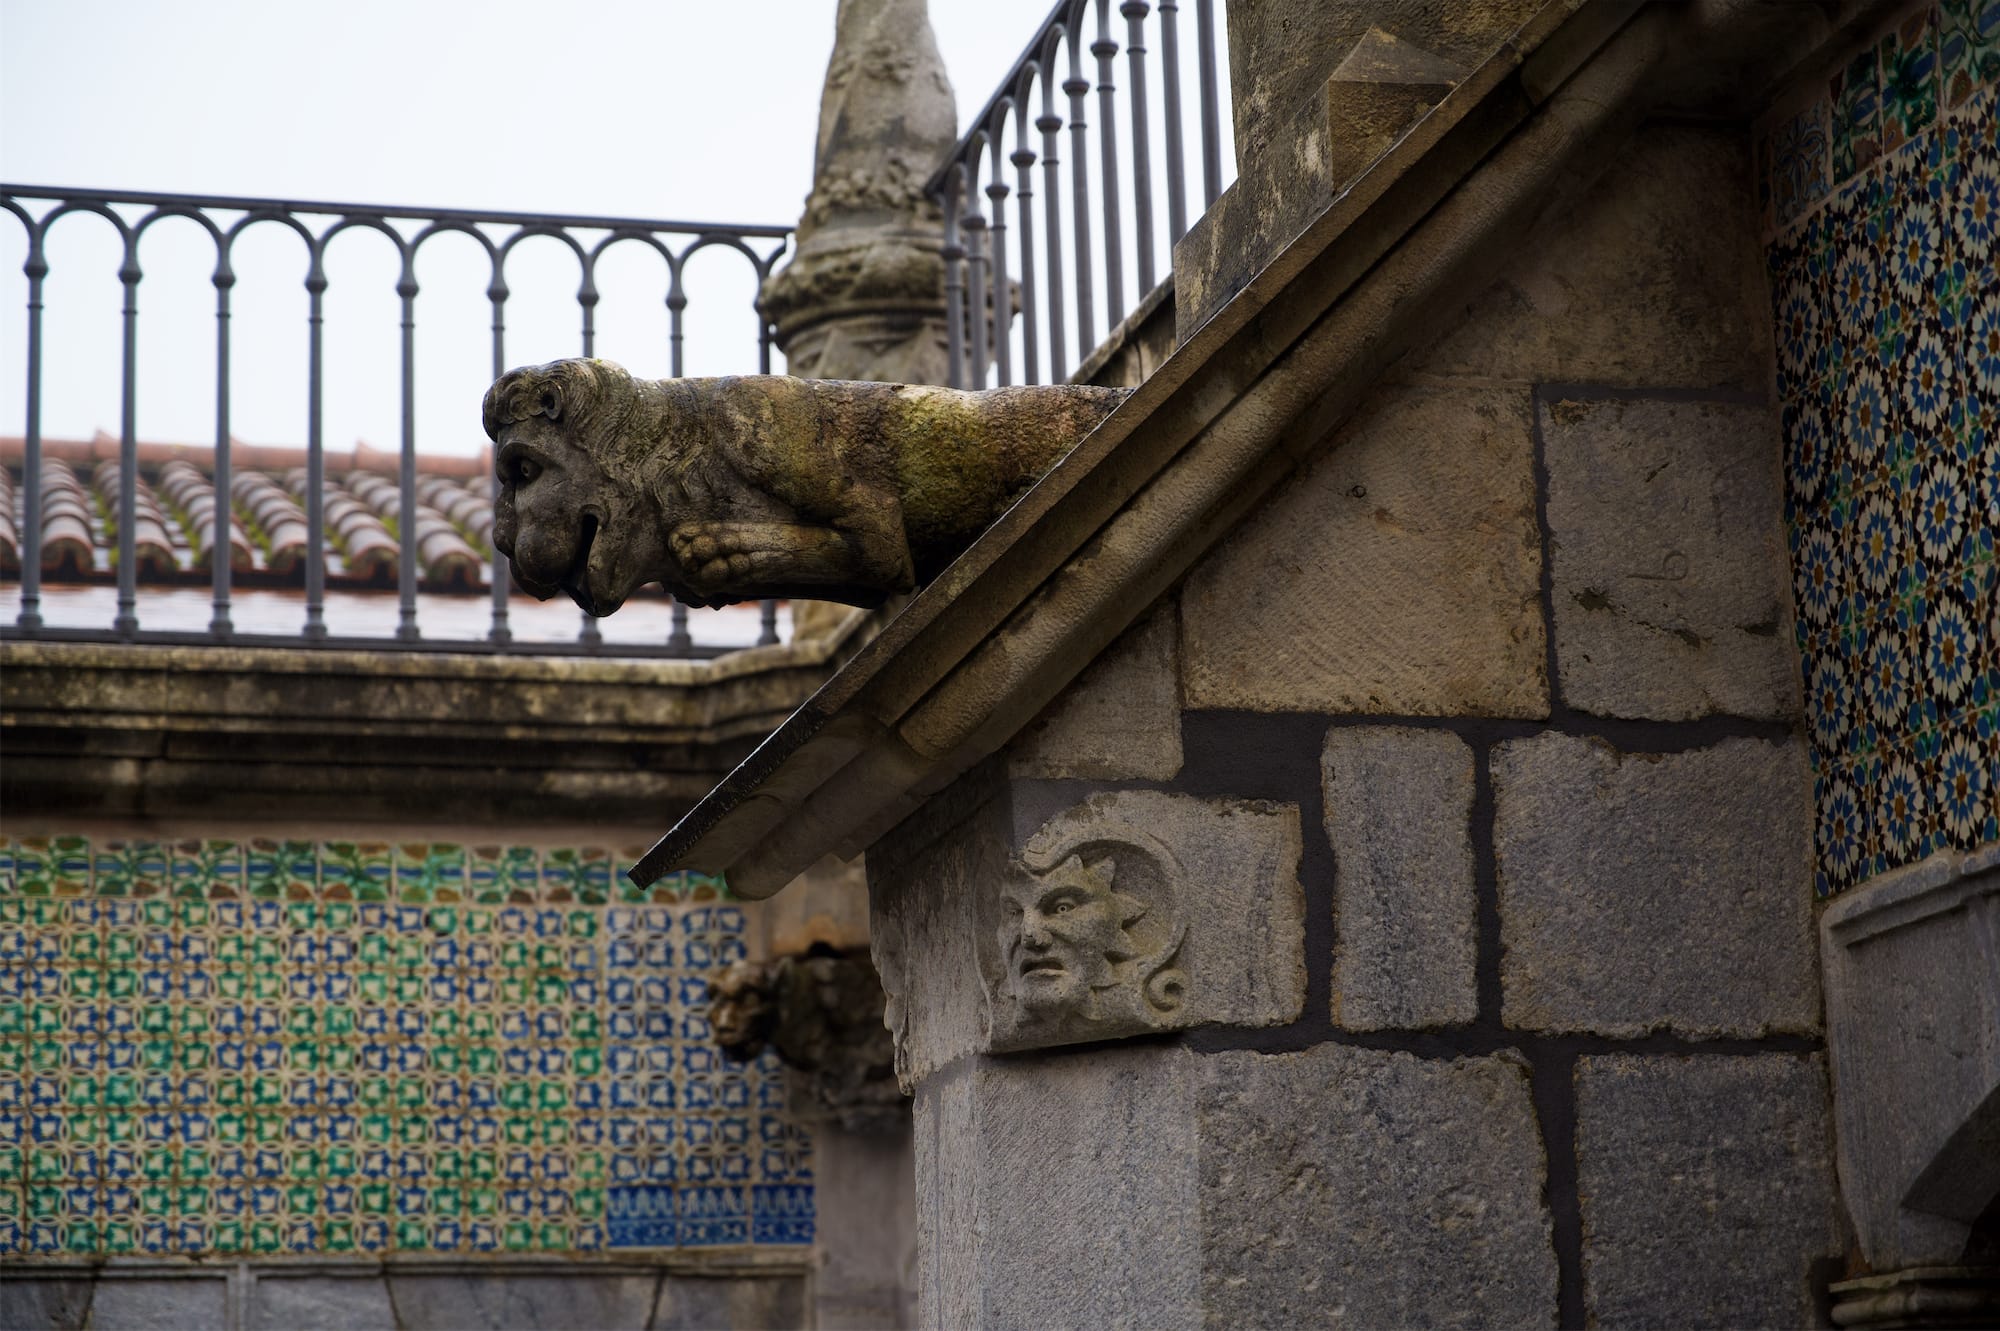 Lisbona: simboli della città e dintorni